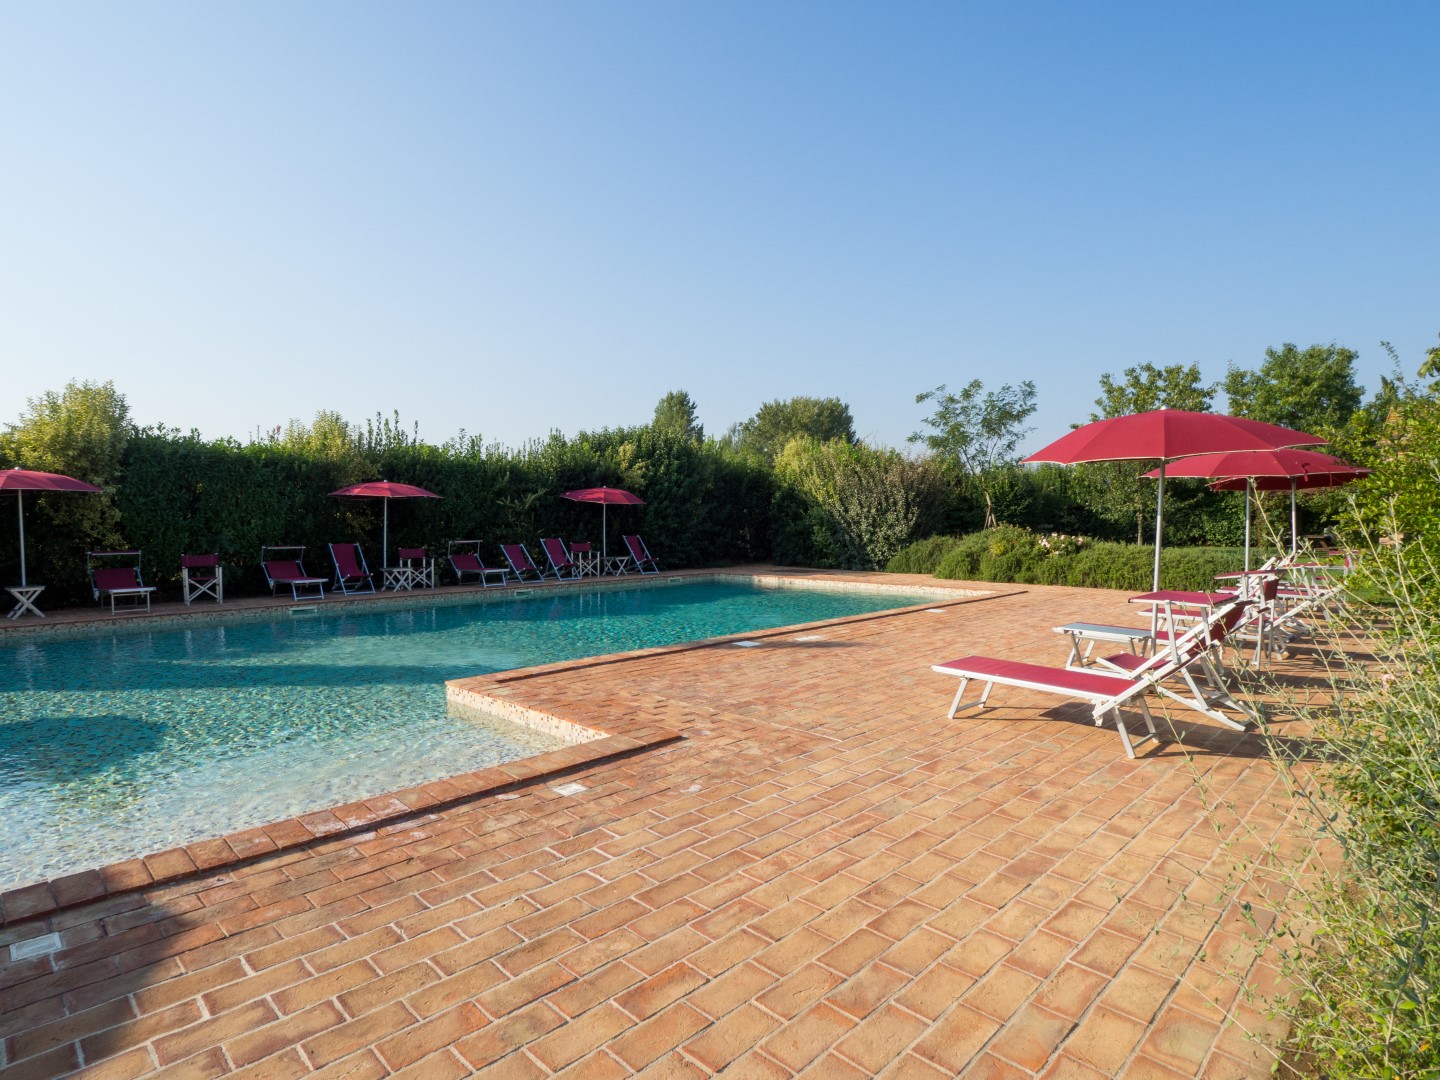 445_0c23aa4_Foresteria di Fontarronco, vakantiehuis met zwembad, Toscane 9 (45)